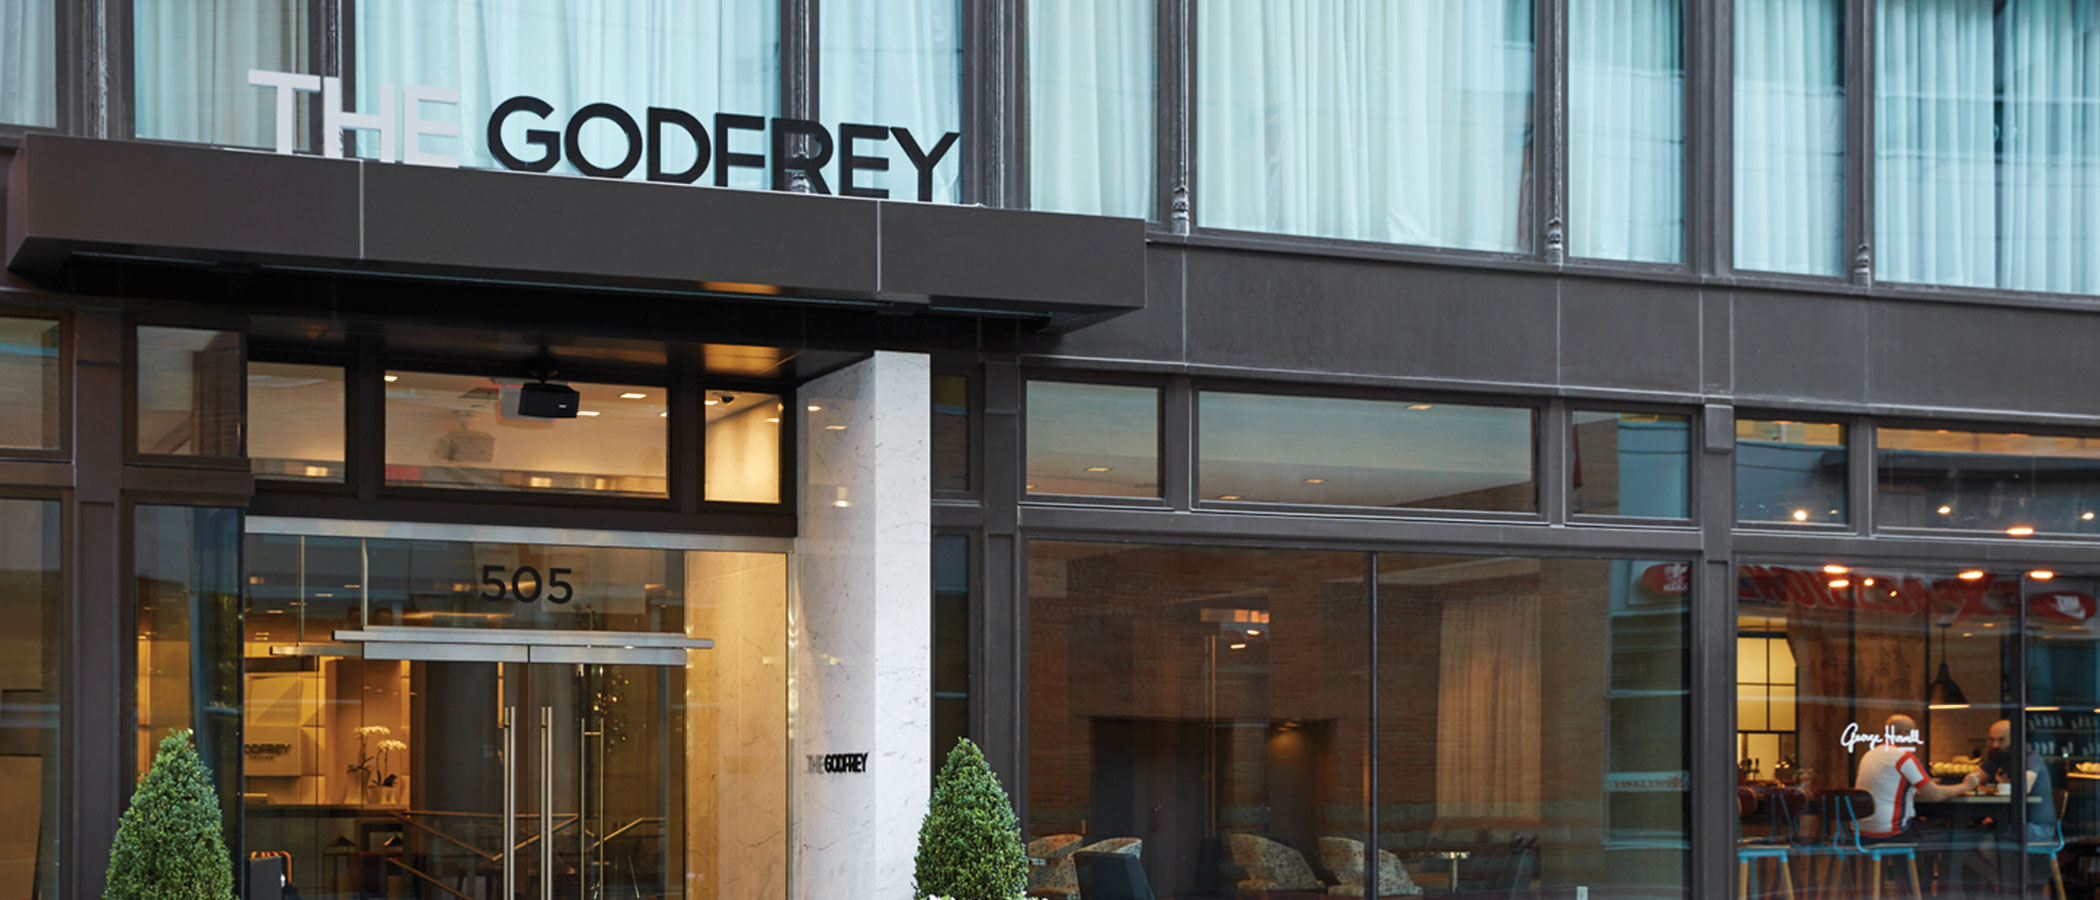 The Godfrey Hotel Boston / Blake & Amory « Heritage Consulting Group ...